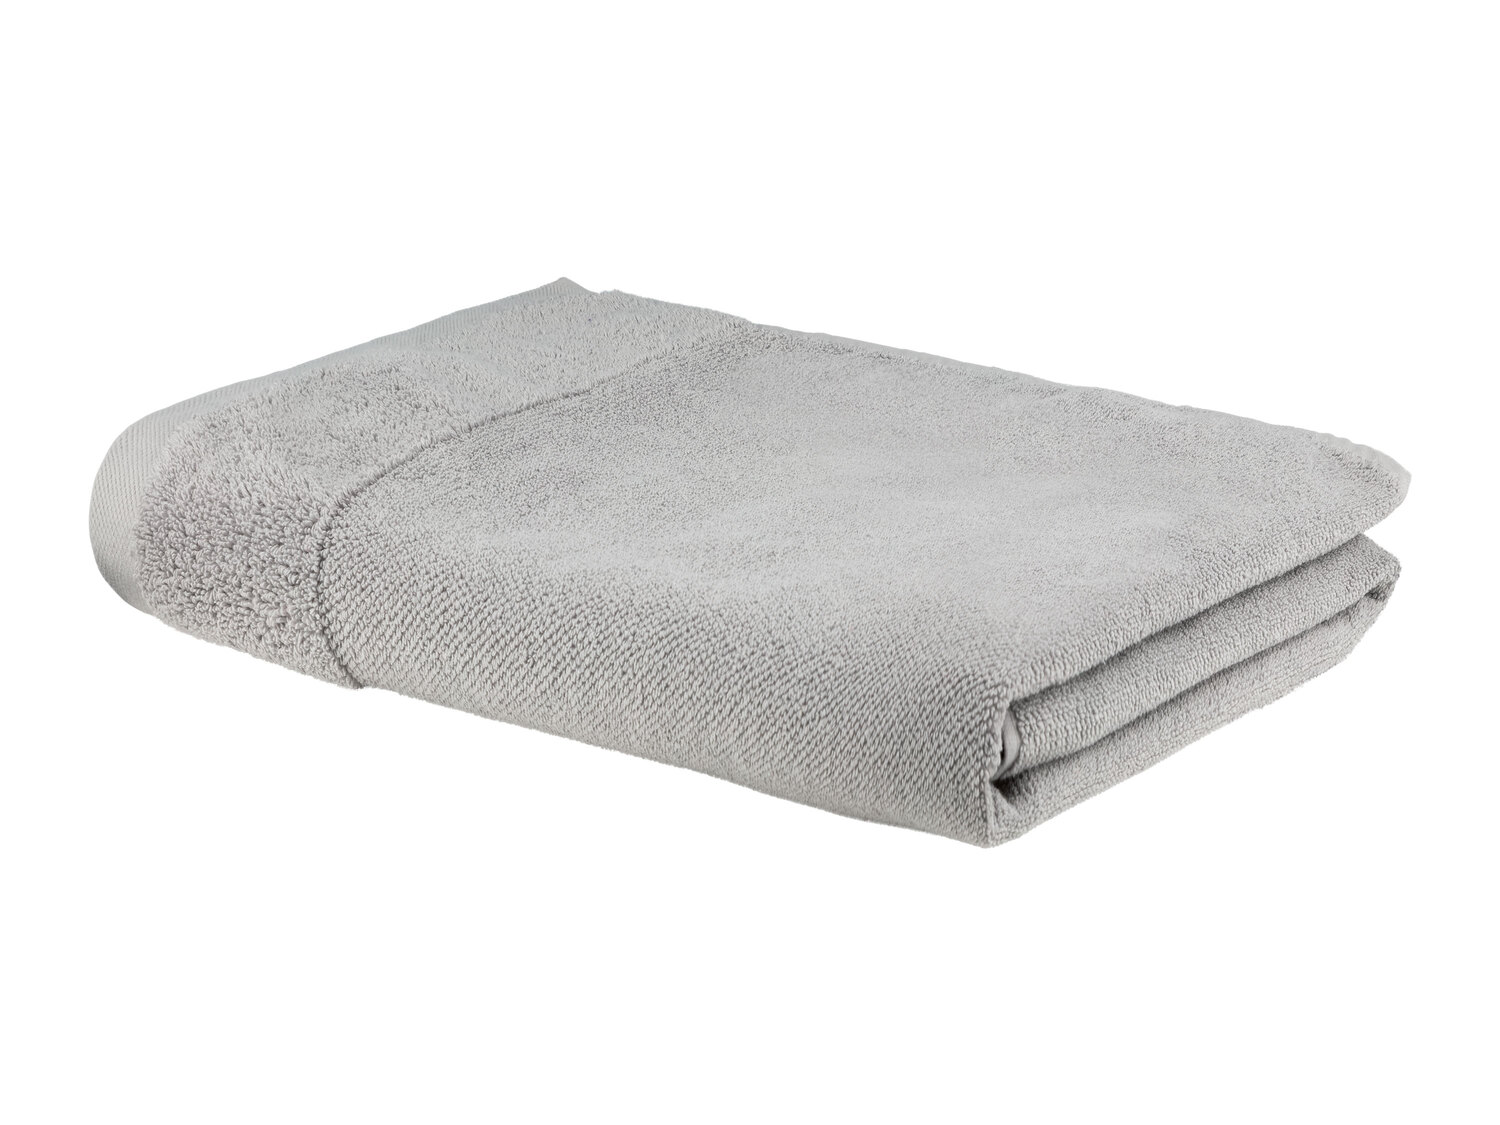 Ręcznik 100 x 150 cm Miomare, cena 34,99 PLN 
- 500 g/m2
- 100% bawełny
- miękkie ...